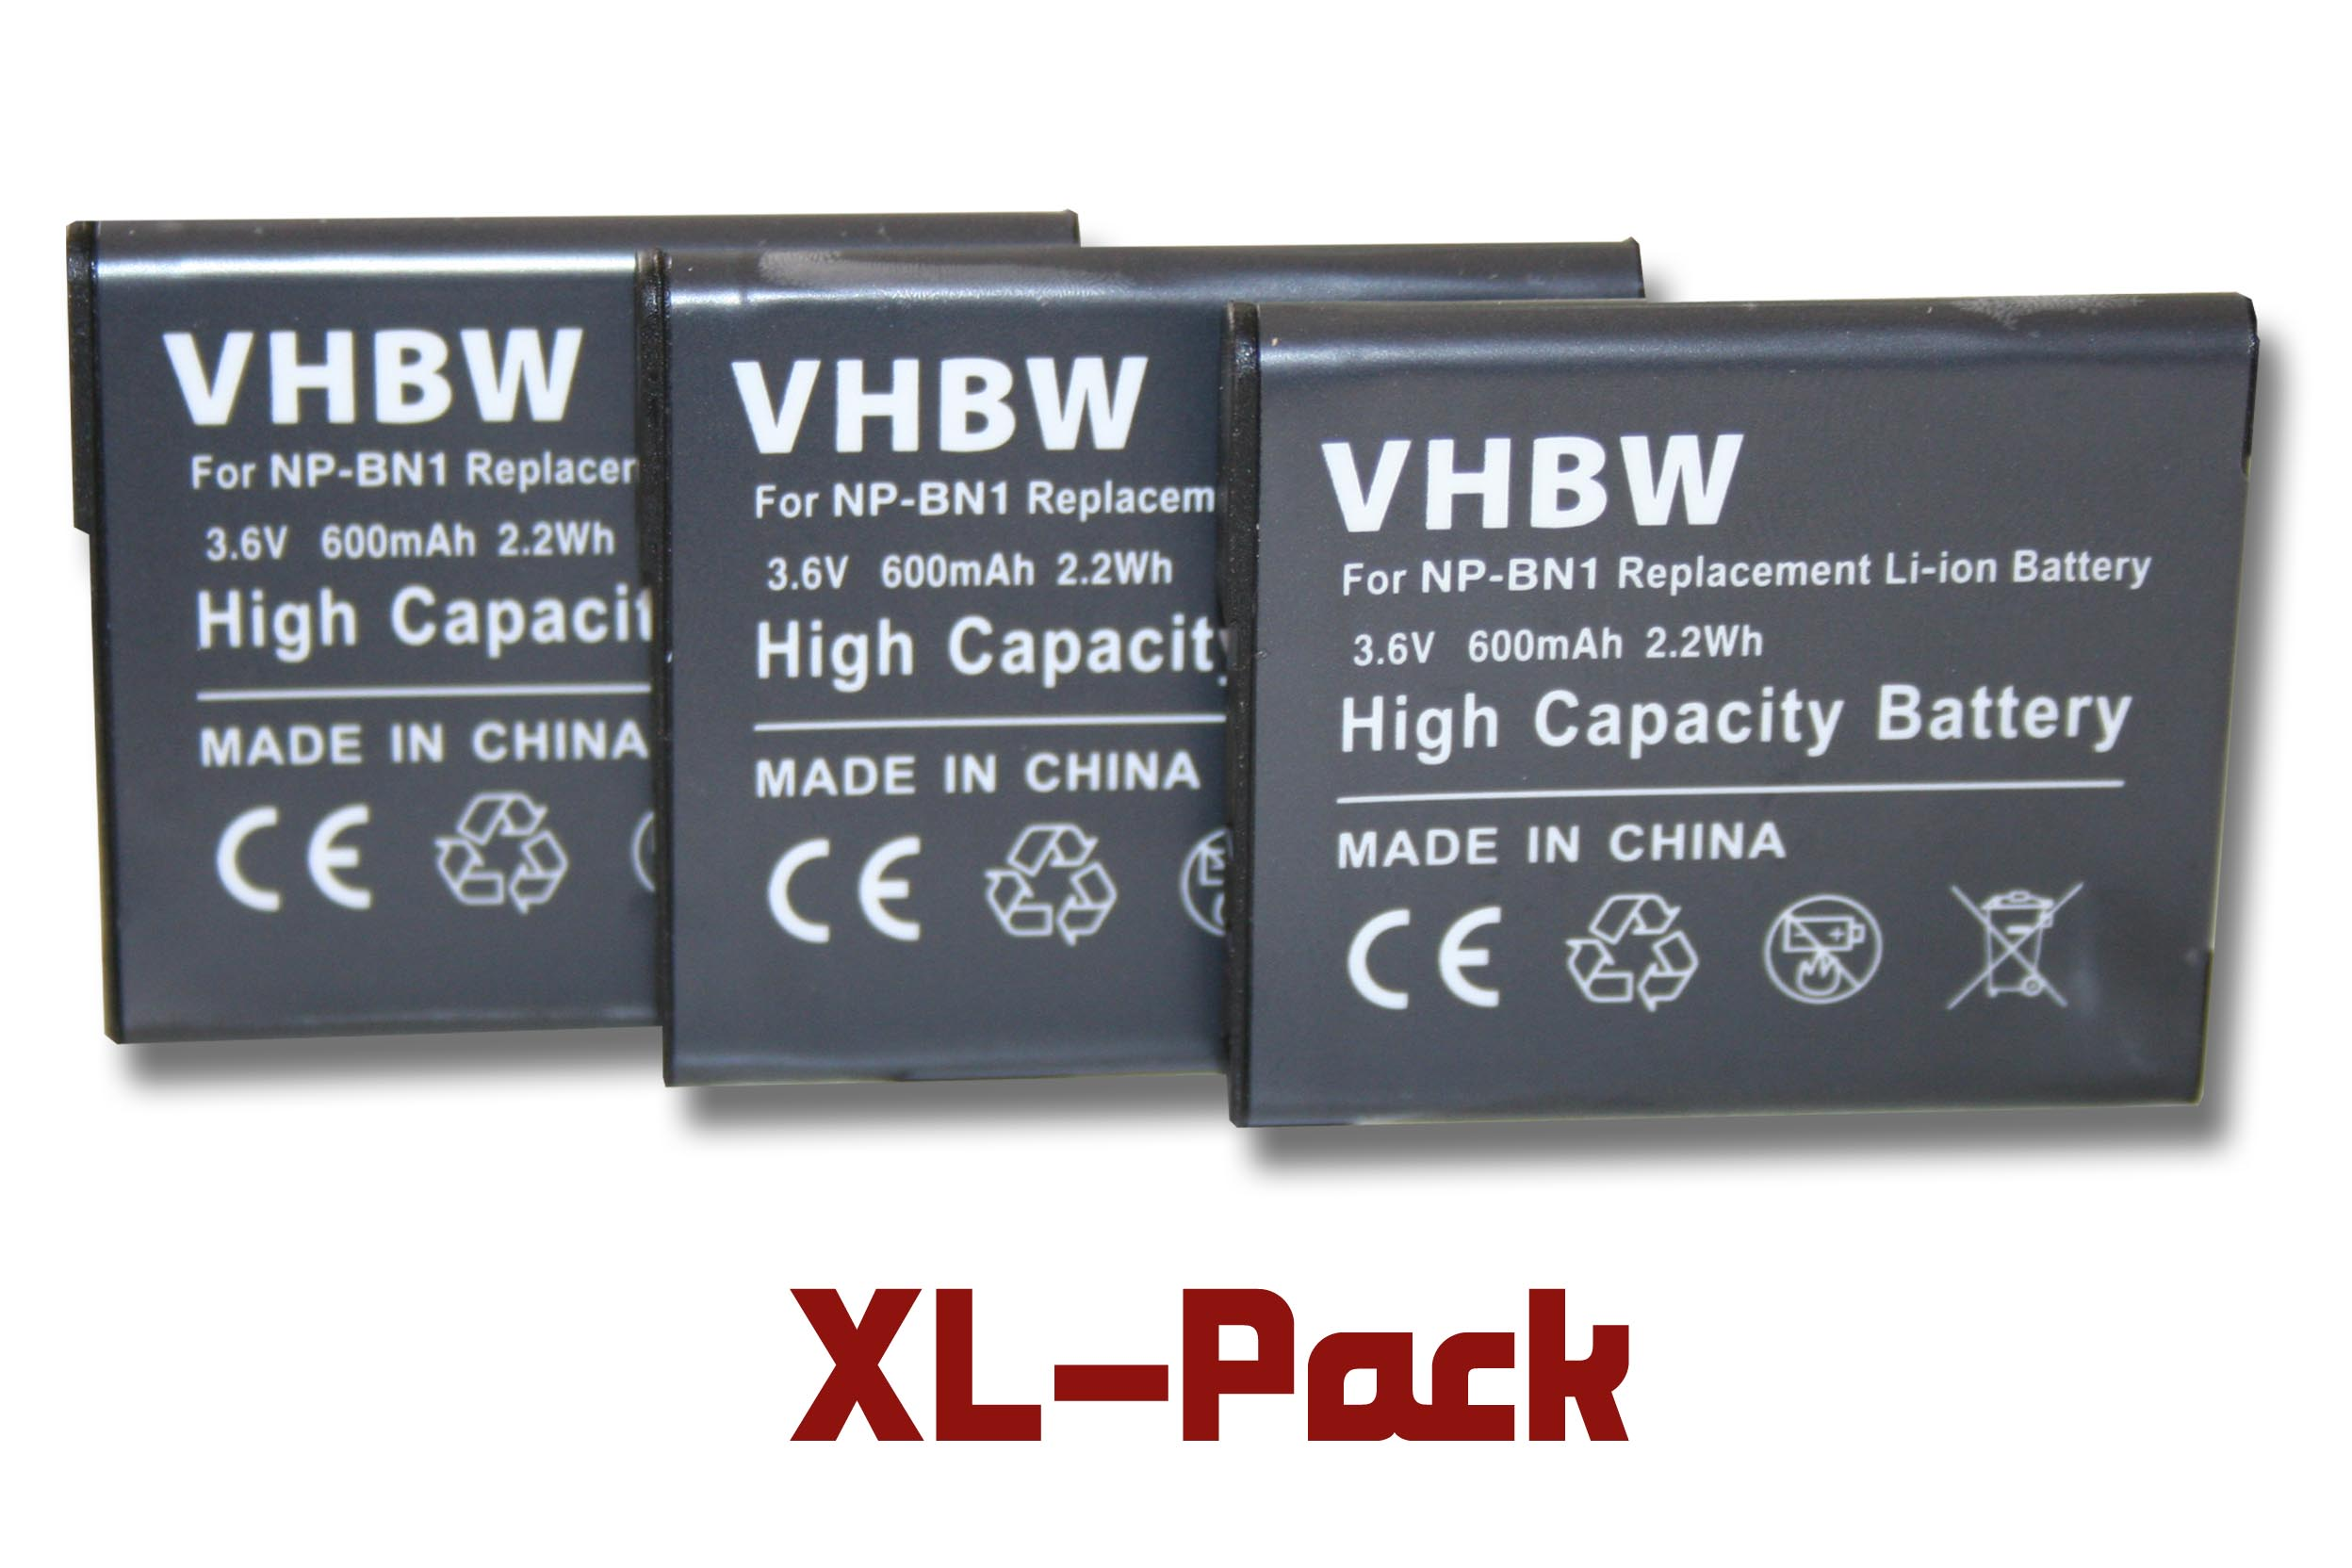 DSC-W710, 600 kompatibel DSC-W810 mit - DSC-W730, 3.6 Akku Volt, Li-Ion Cybershot VHBW DSC-W830, Kamera, Sony DSC-W650, DSC-W670, DSC-W690,